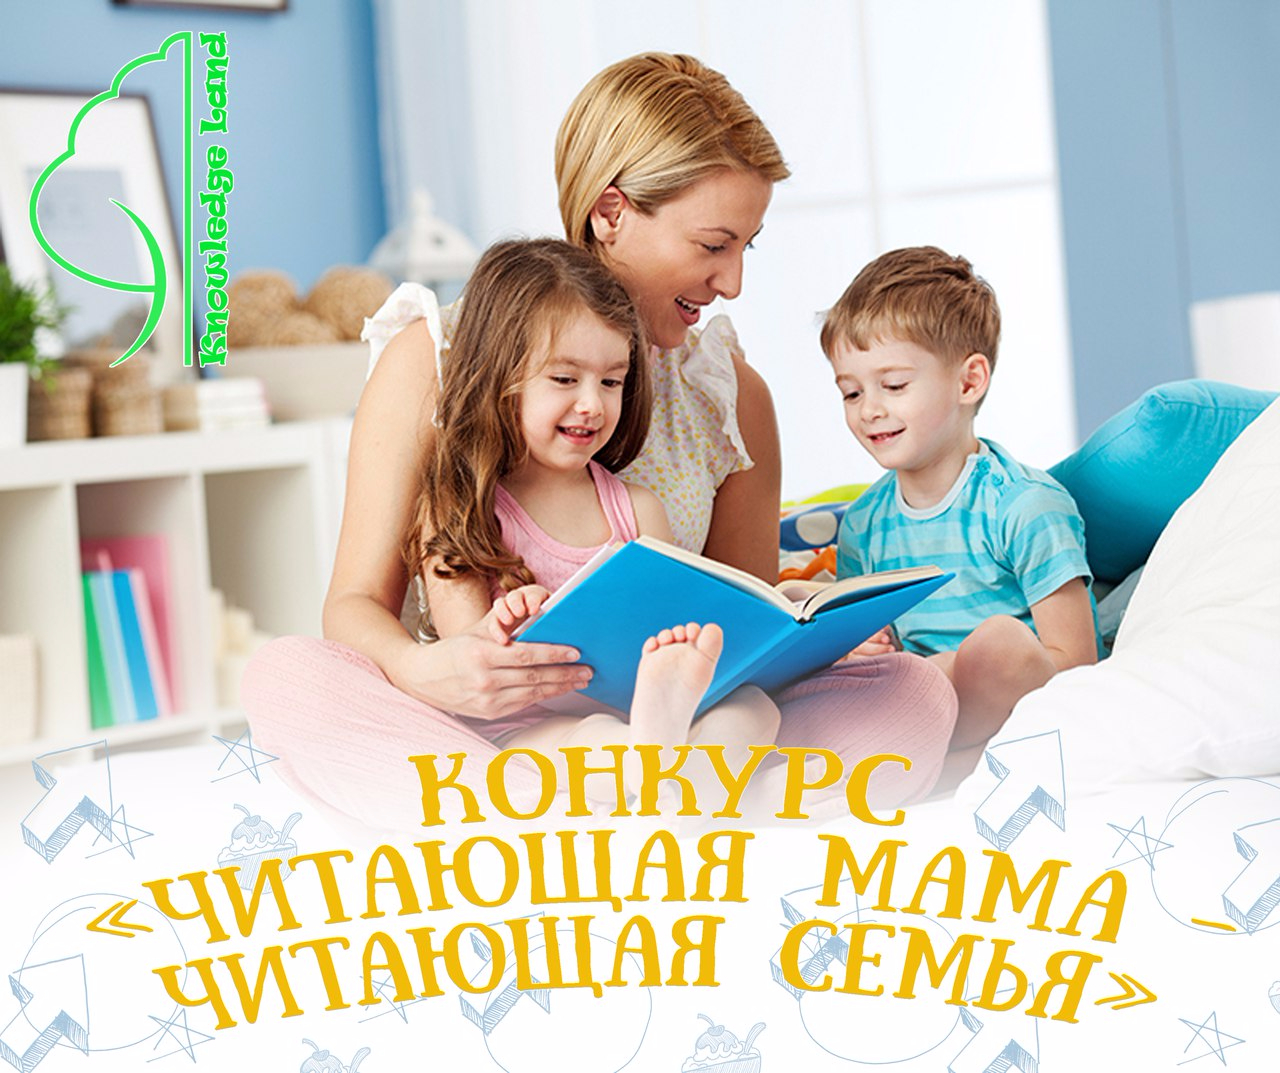 Читать новая семья. Читающая семья. Чтение книг семьей. Читаем с мамой. Читающая семья конкурс.